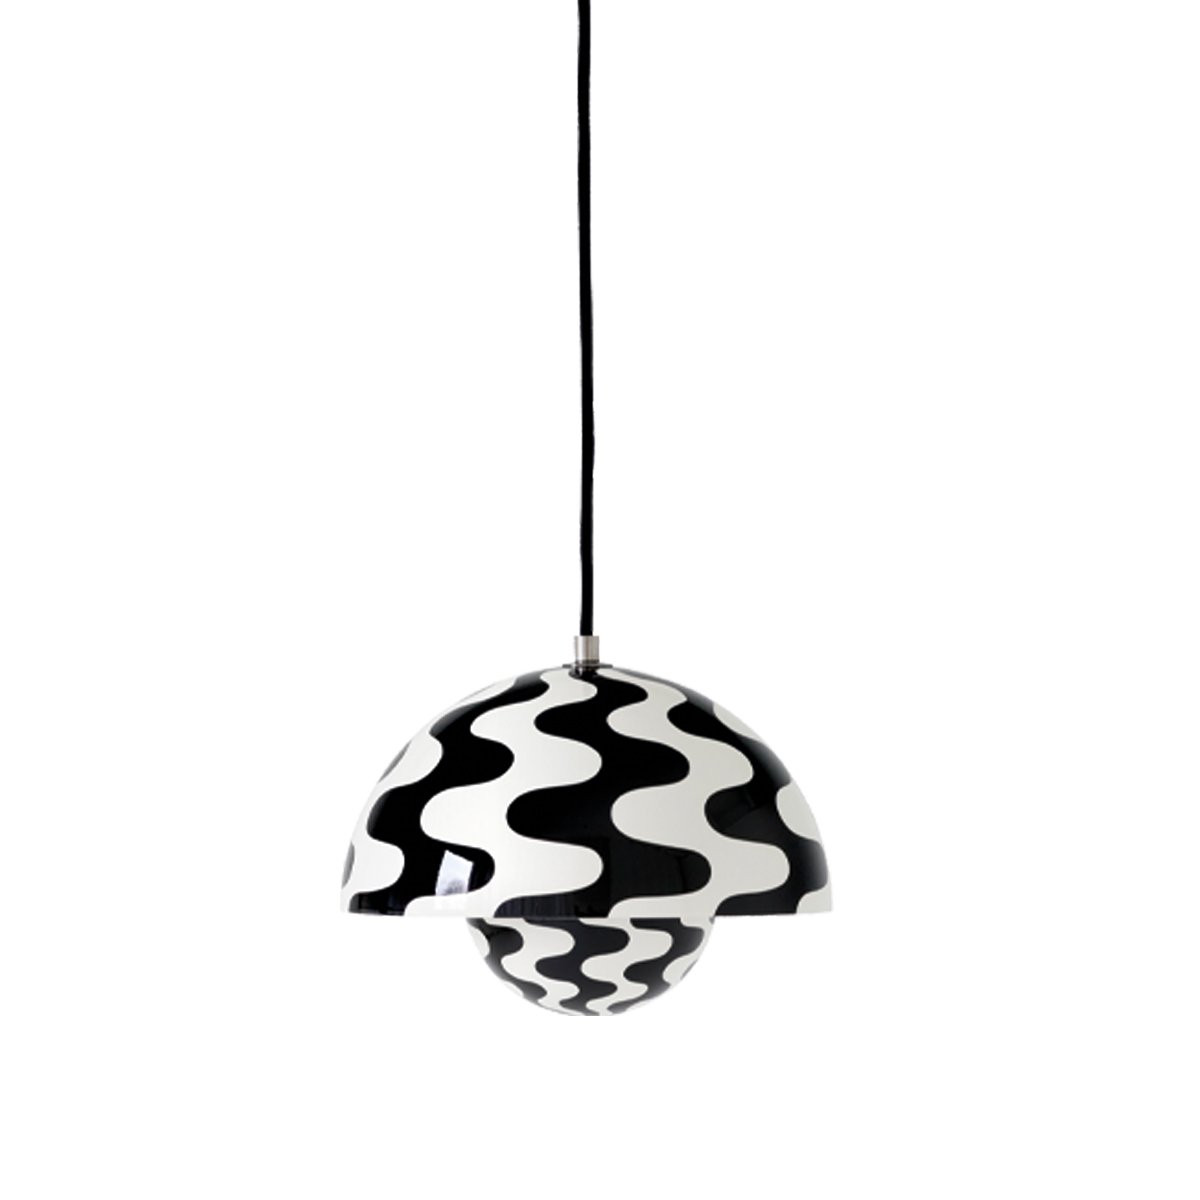 & Tradition Flowerpot VP1 Hanglamp - Pattern Black/White